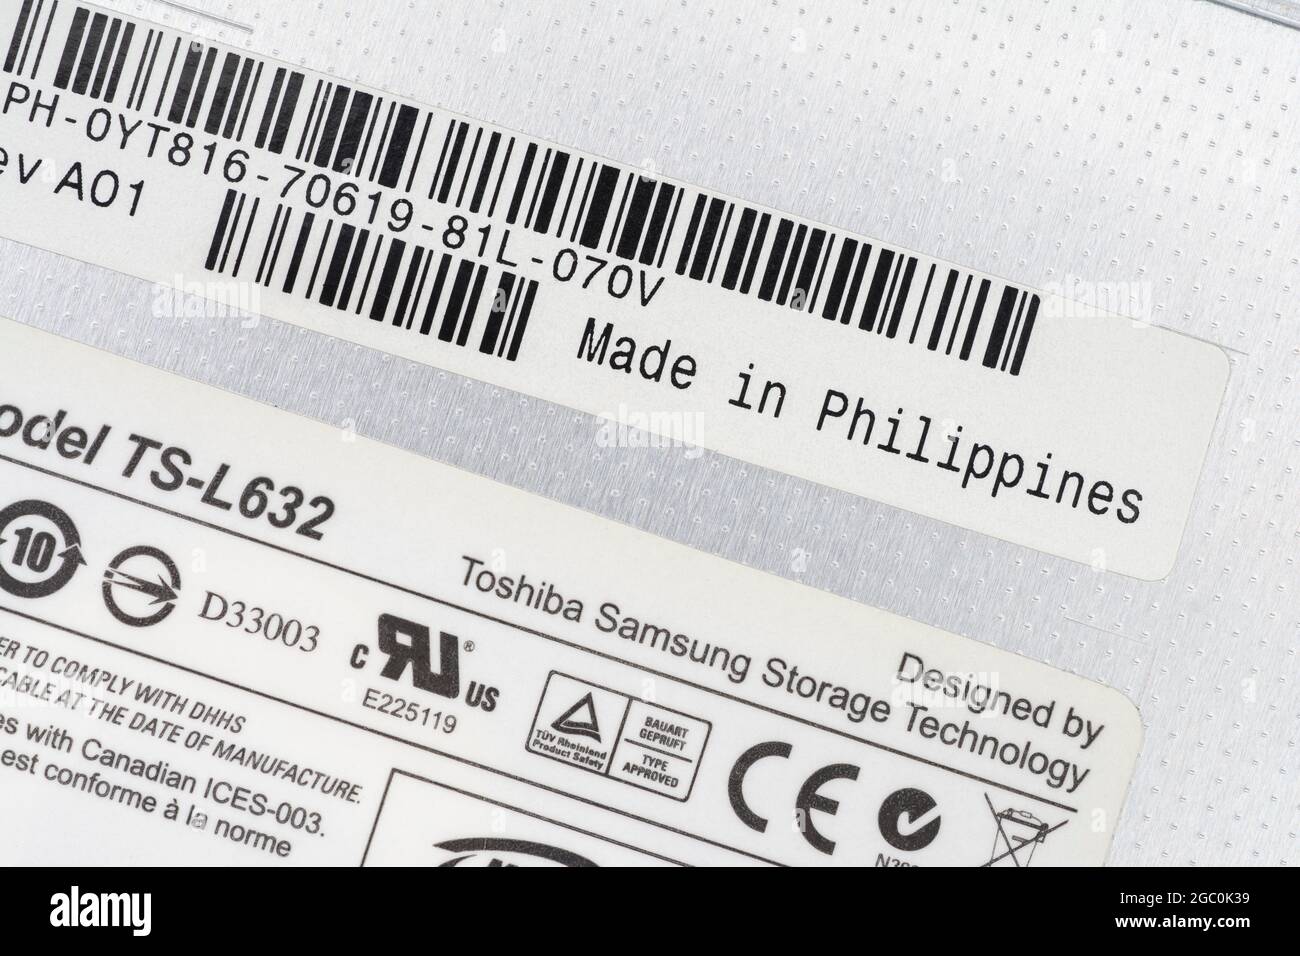 Étiquettes en papier à l'arrière d'un graveur de DVD portable amovible Toshiba-Samsung avec étiquette Made in the Philippines. Pour délocaliser les pièces. Banque D'Images